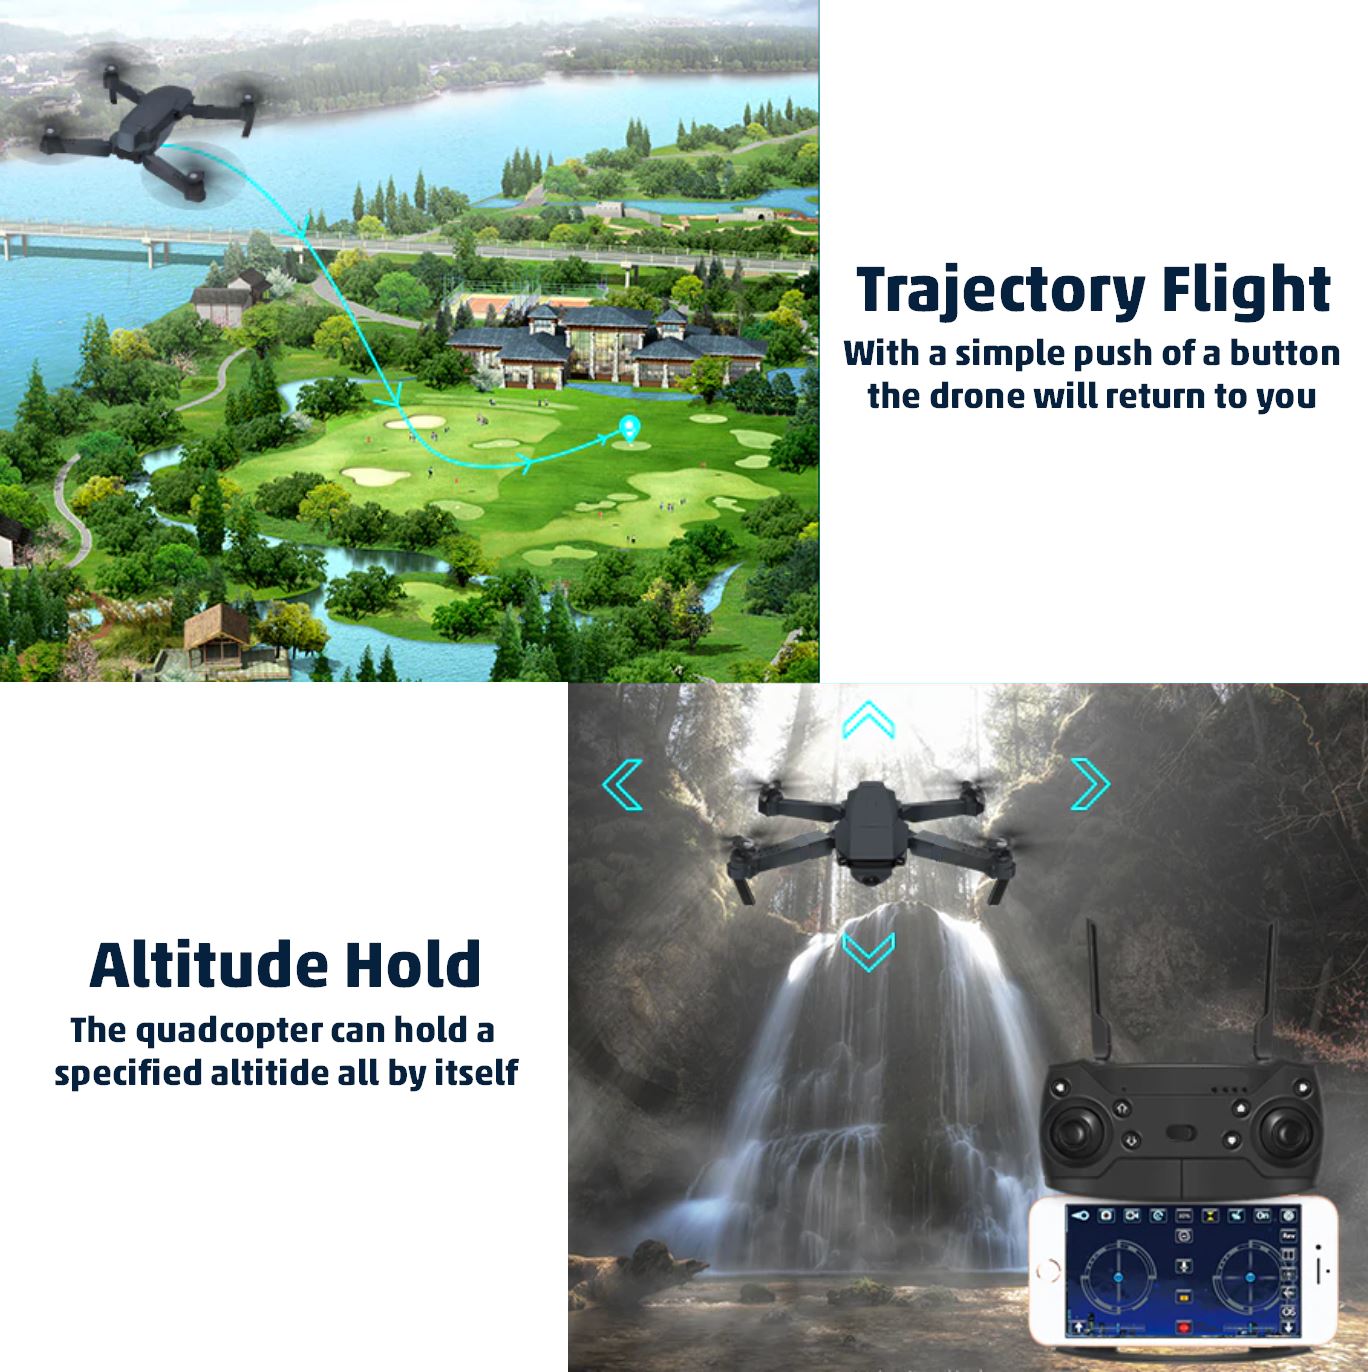 HD Quadcopter Drone